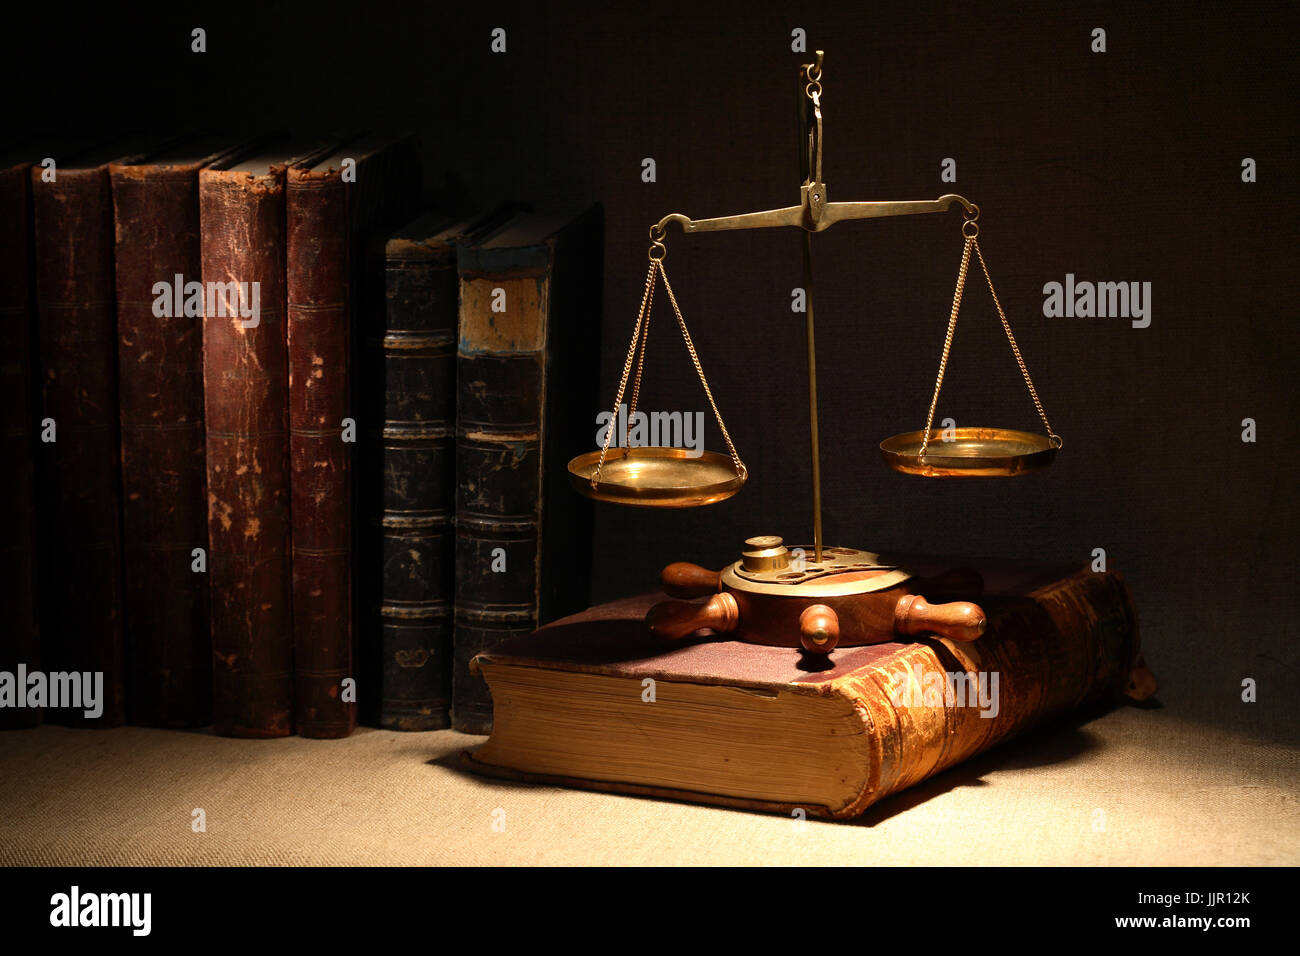 Concepto de legislación. Báscula de latón antiguo y libros antiguos bajo el haz de luz sobre un fondo oscuro Foto de stock